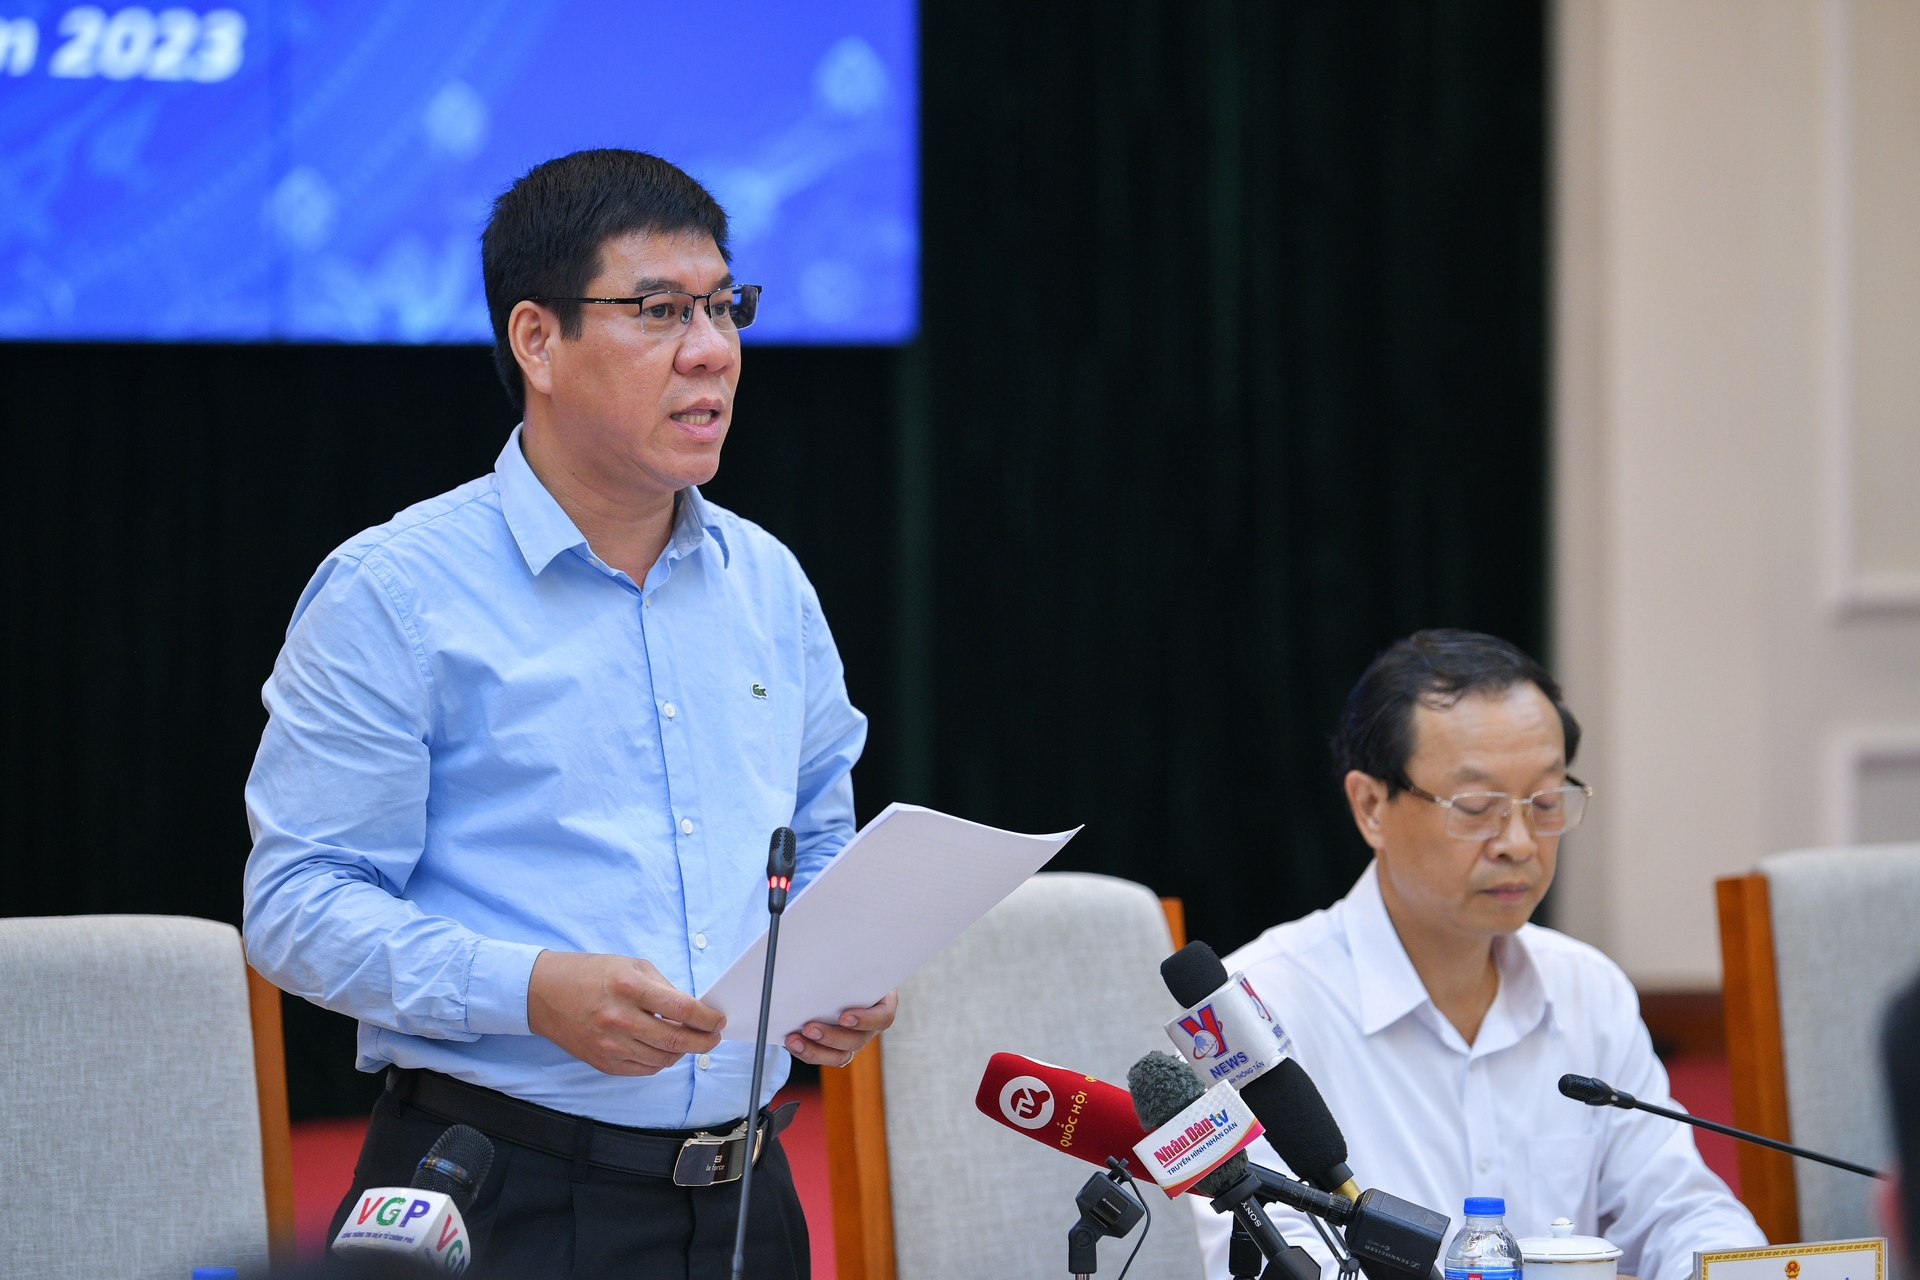 Cục trưởng Cục Quản lý chất lượng Huỳnh Văn Chương thông tin về kỳ thi tốt nghiệp THPT 2023.